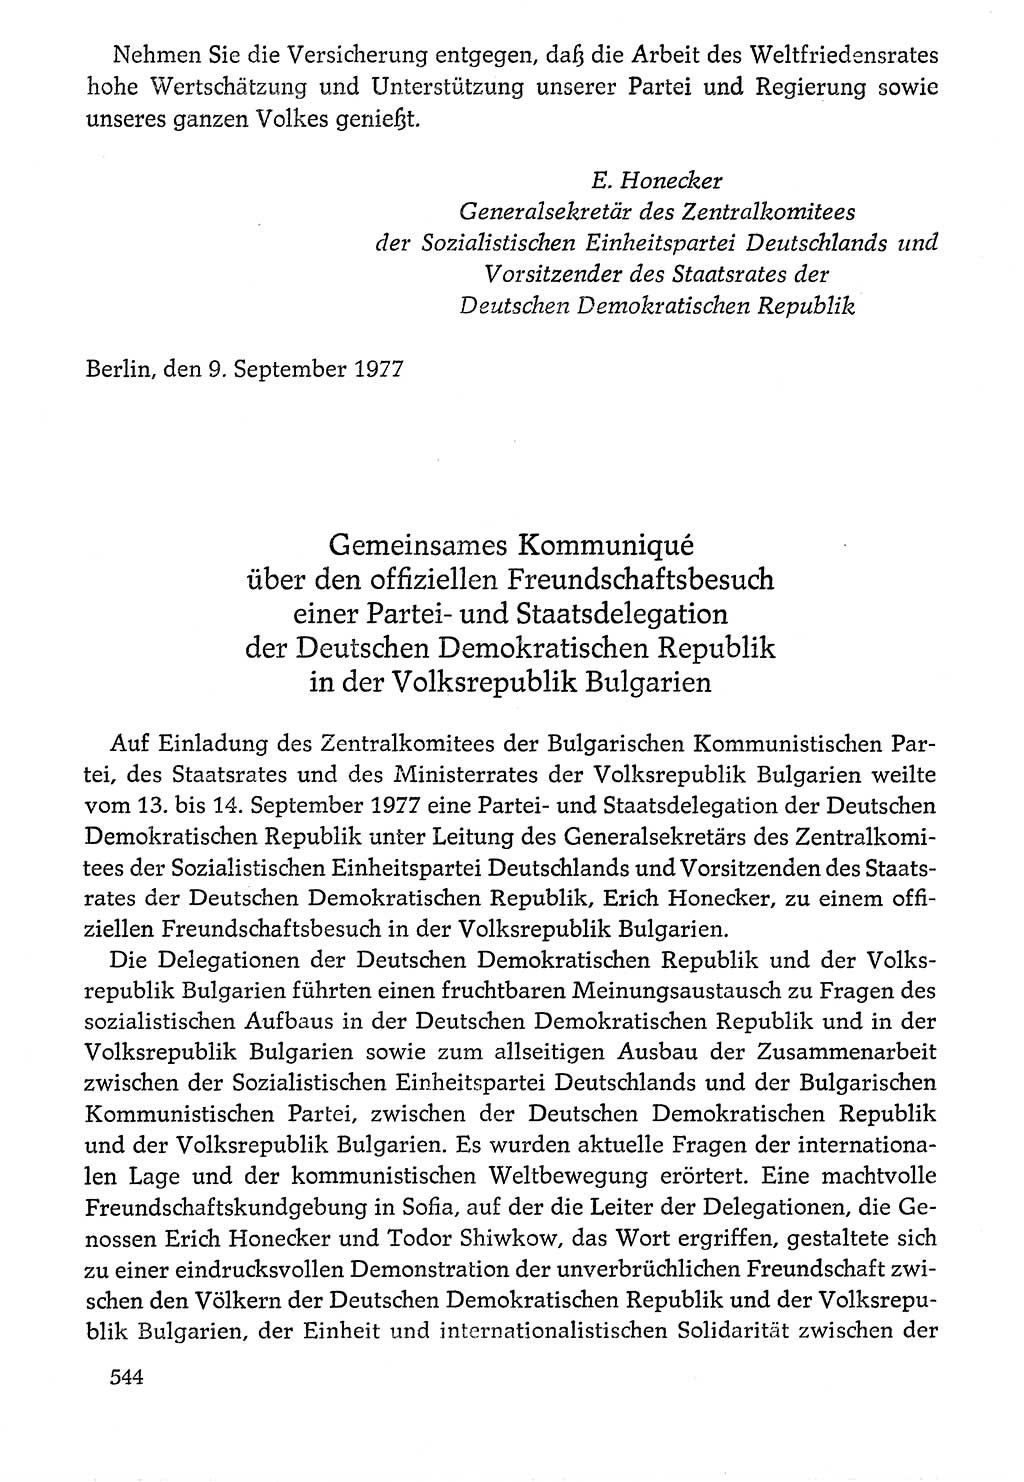 Dokumente der Sozialistischen Einheitspartei Deutschlands (SED) [Deutsche Demokratische Republik (DDR)] 1976-1977, Seite 544 (Dok. SED DDR 1976-1977, S. 544)